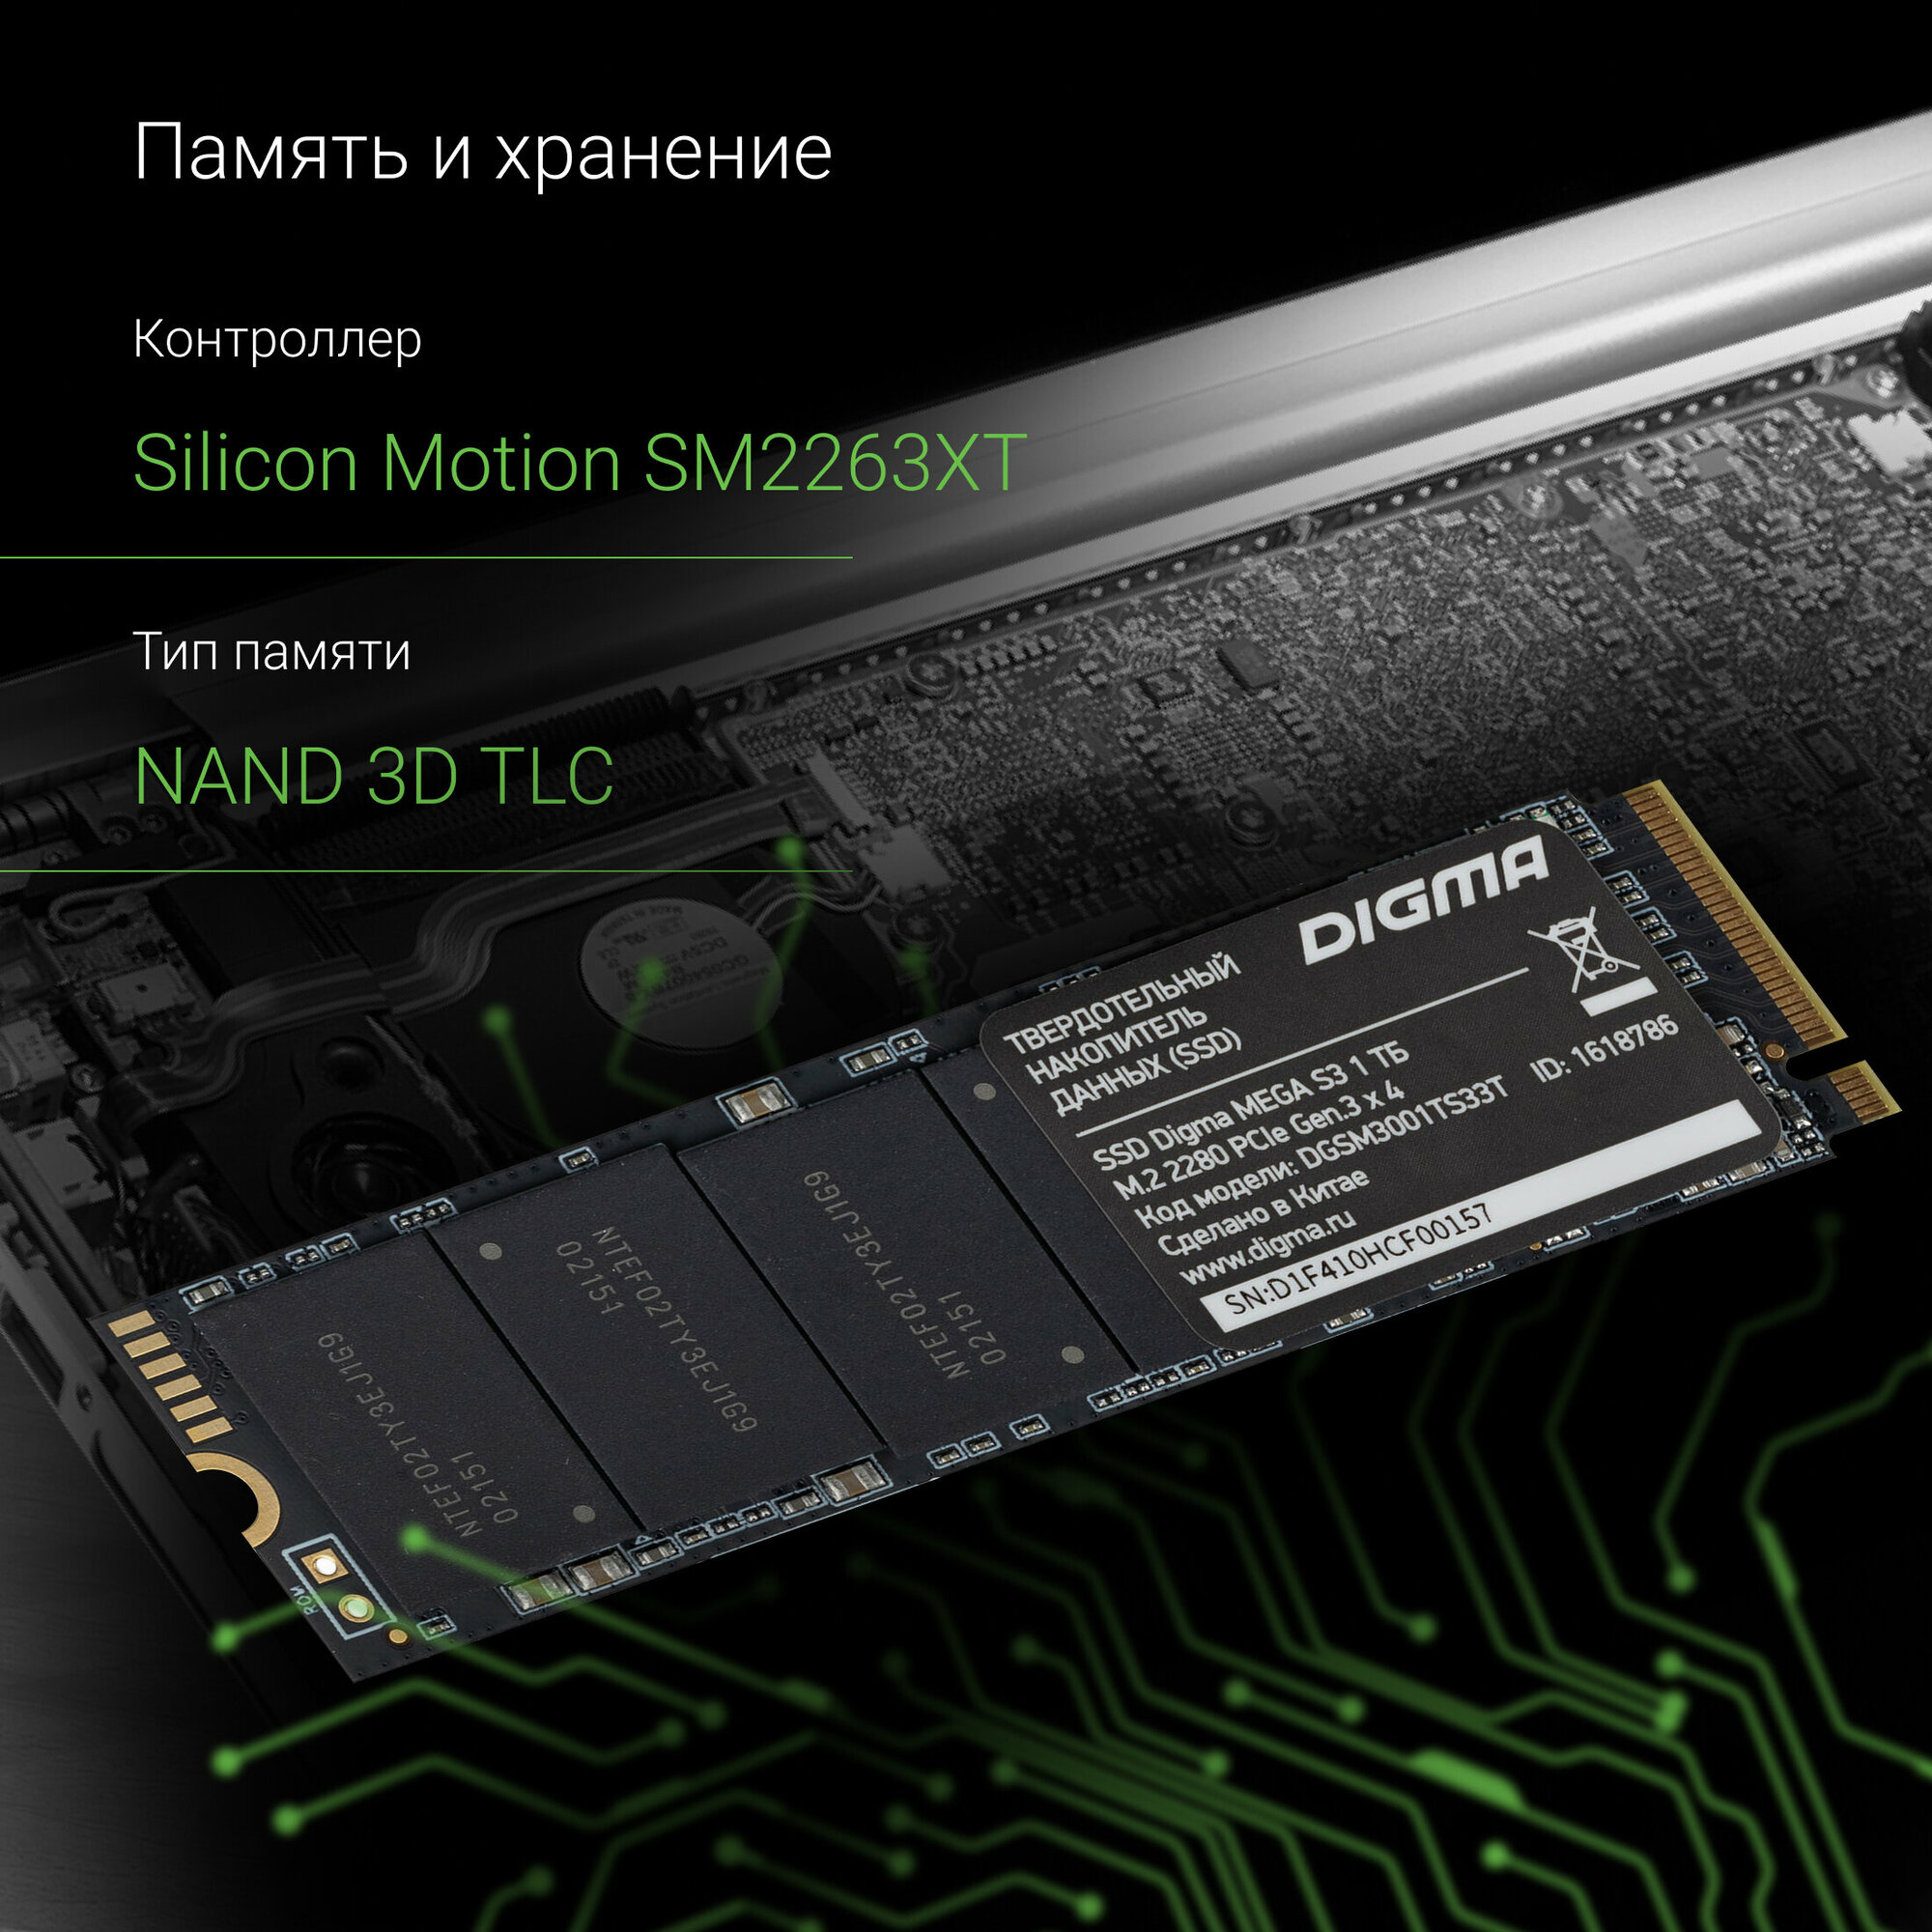 SSD накопитель Digma Mega S3 1ТБ, M.2 2280, PCI-E x4, NVMe, rtl - фото №10